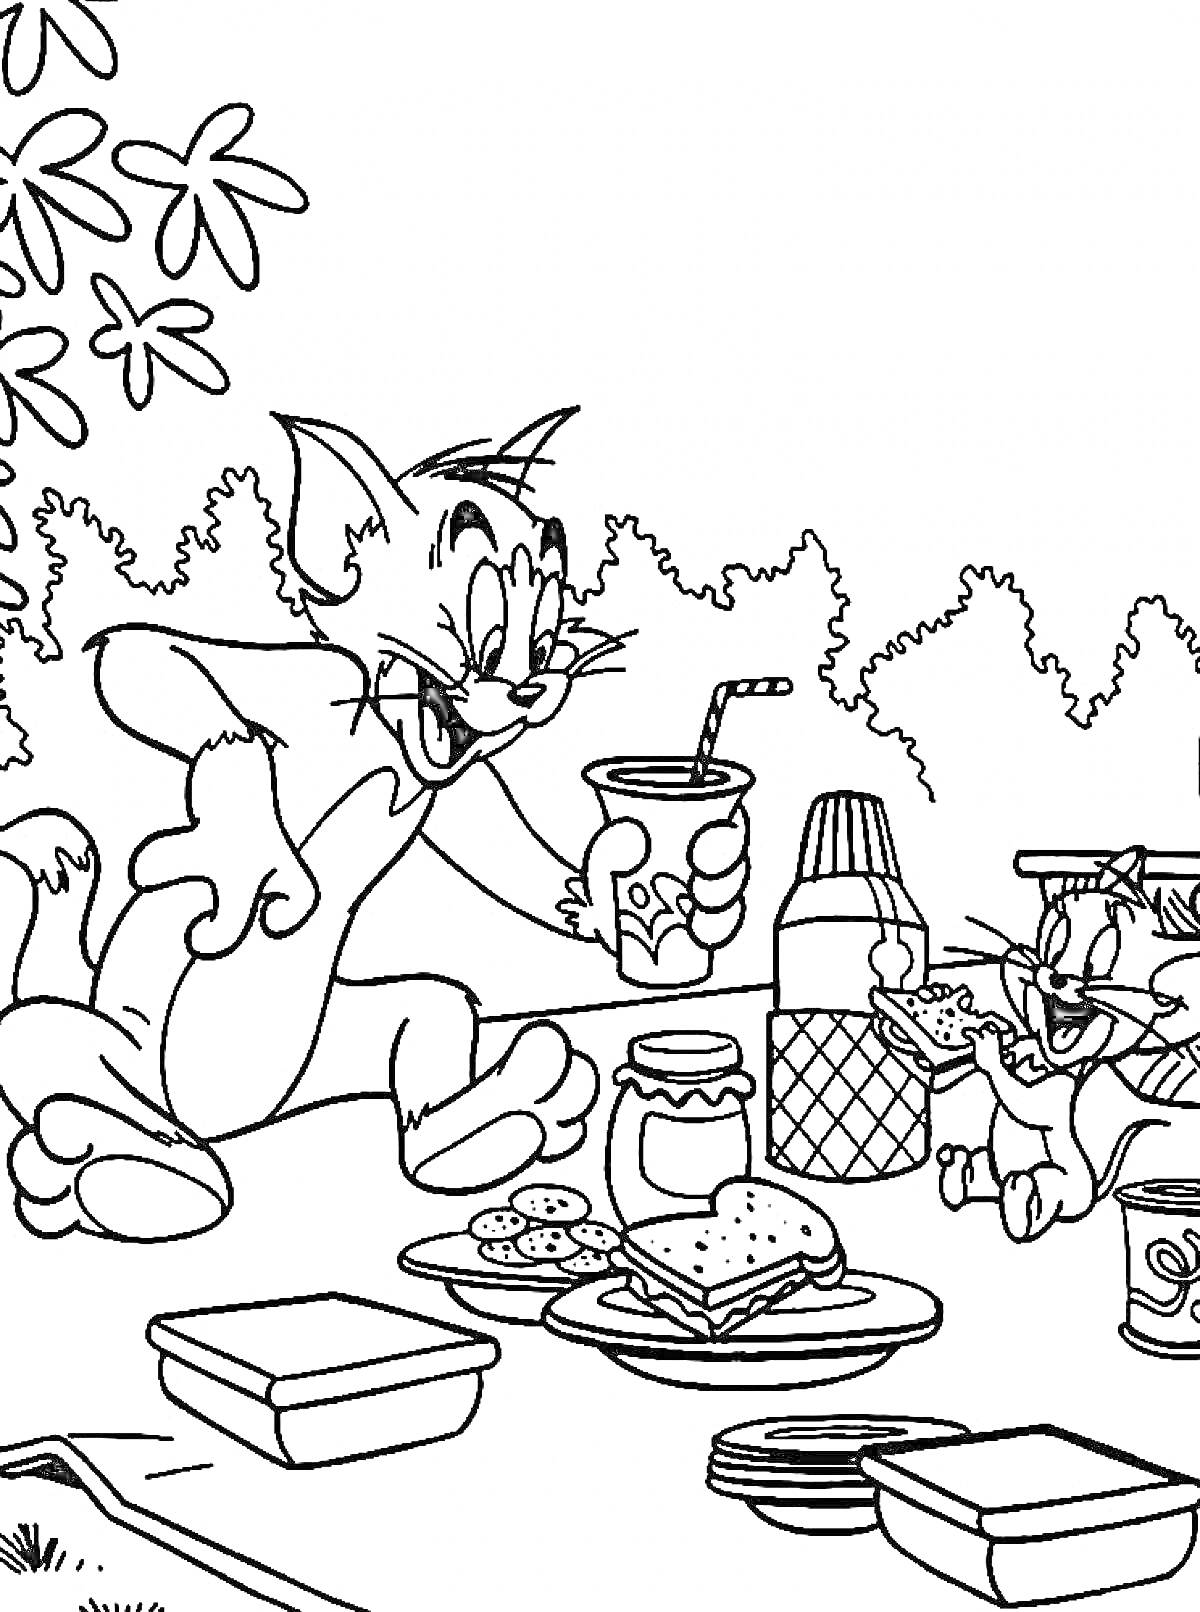 Пикник Тома и Джерри под деревьями с бутербродами, печеньем и напитками